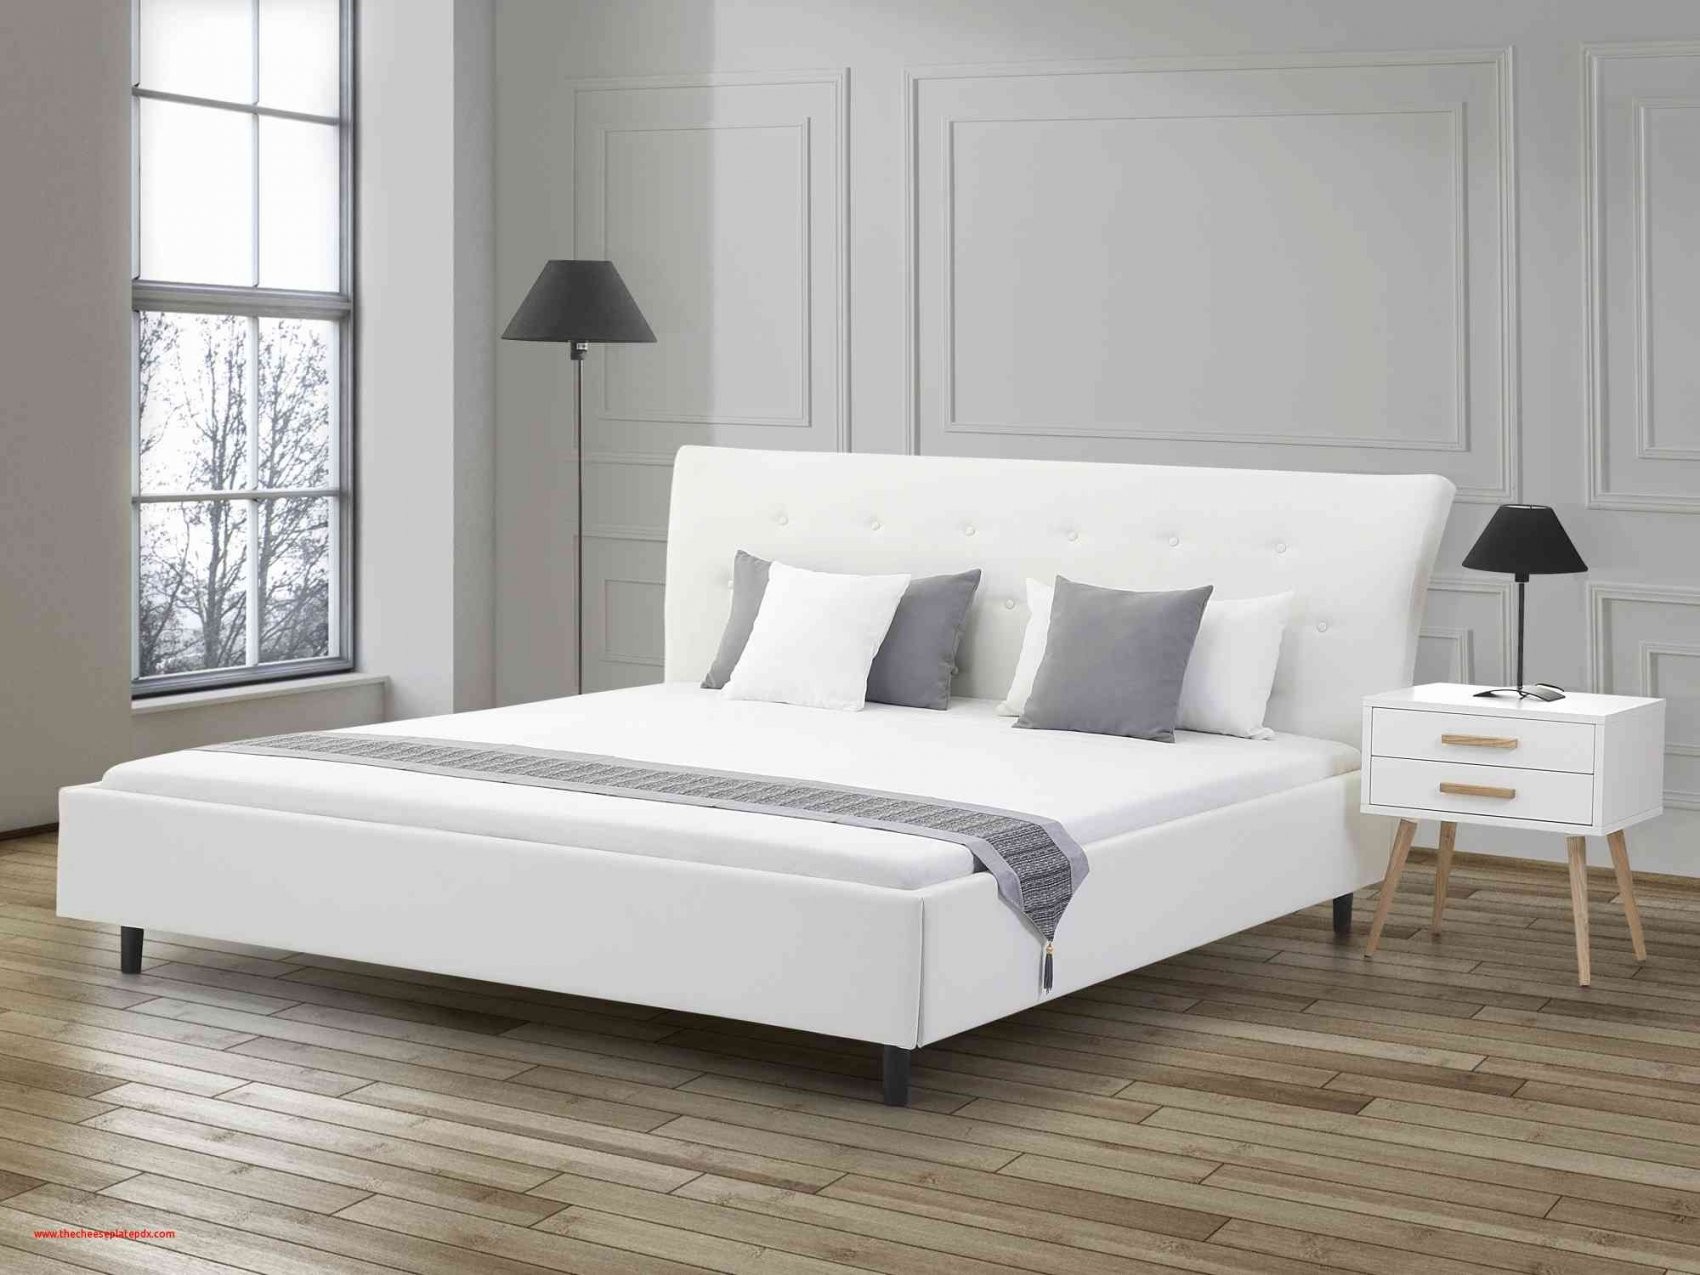 Should Bett Mit Matratze Und Lattenrost 180X200 Select von Bett Mit Matratze Und Lattenrost 180X200 Bild